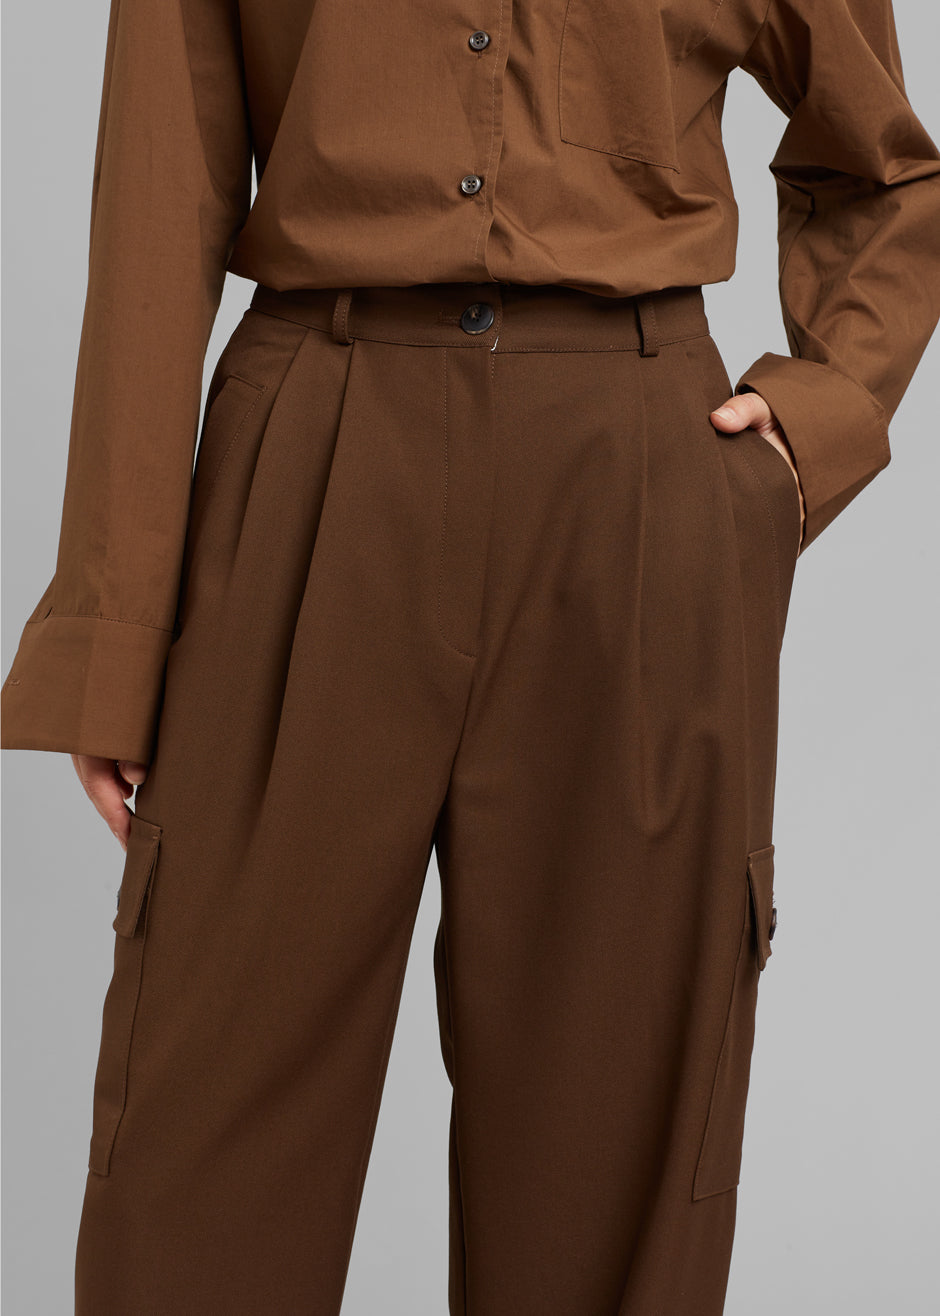 Maesa Cargo Pants - Brown - 6